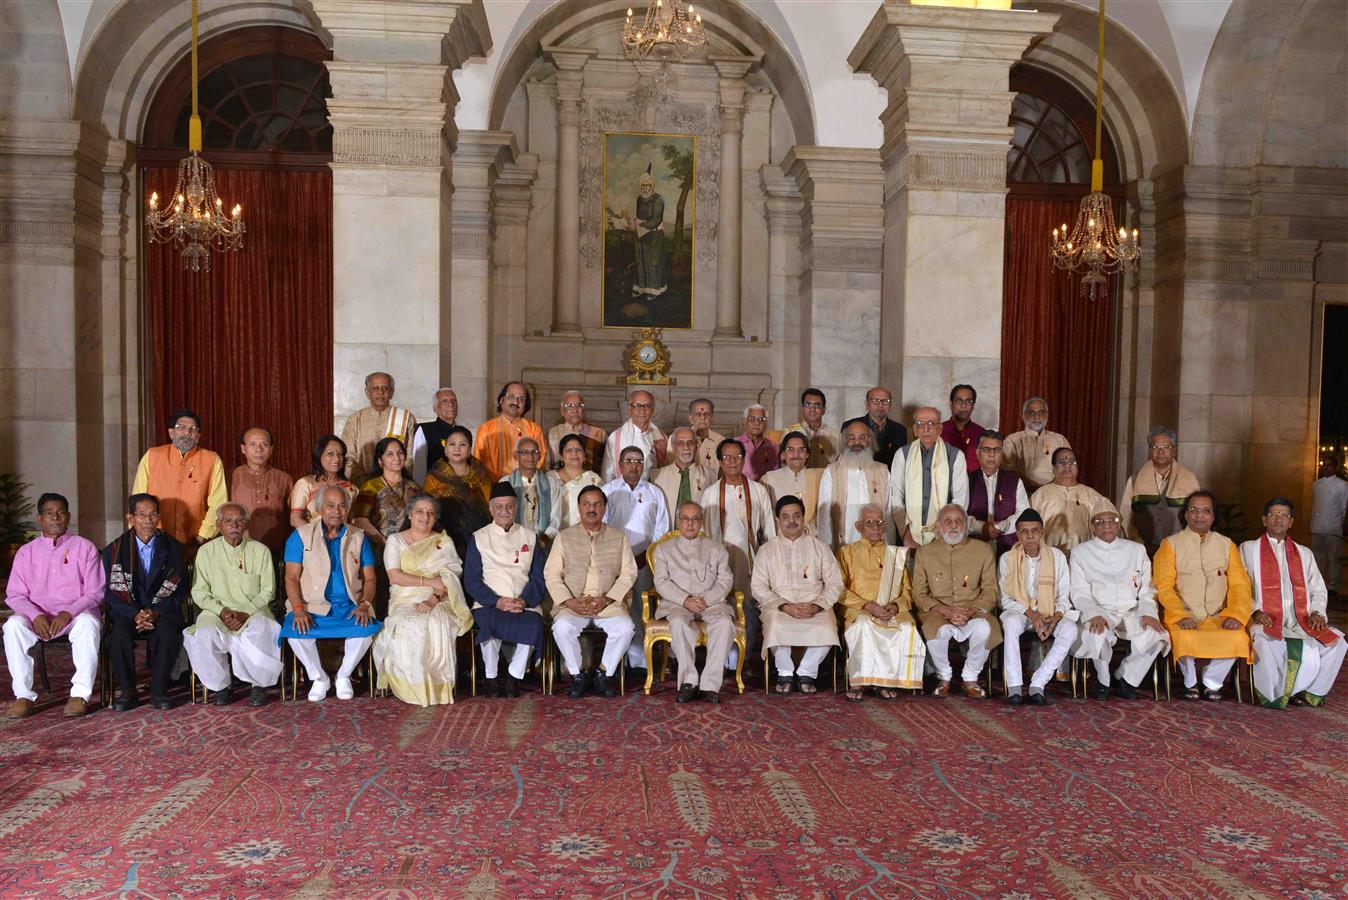 भारत के राष्ट्रपति, श्री प्रणब मुखर्जी 23 अक्तूबर, 2015 को, राष्ट्रपति भवन में वर्ष 2014 की संगीत नाटक अकादमी अध्येतावृत्तियां और संगीत नाटक अकादमी पुरस्कार प्राप्तकर्ताओं के साथ।